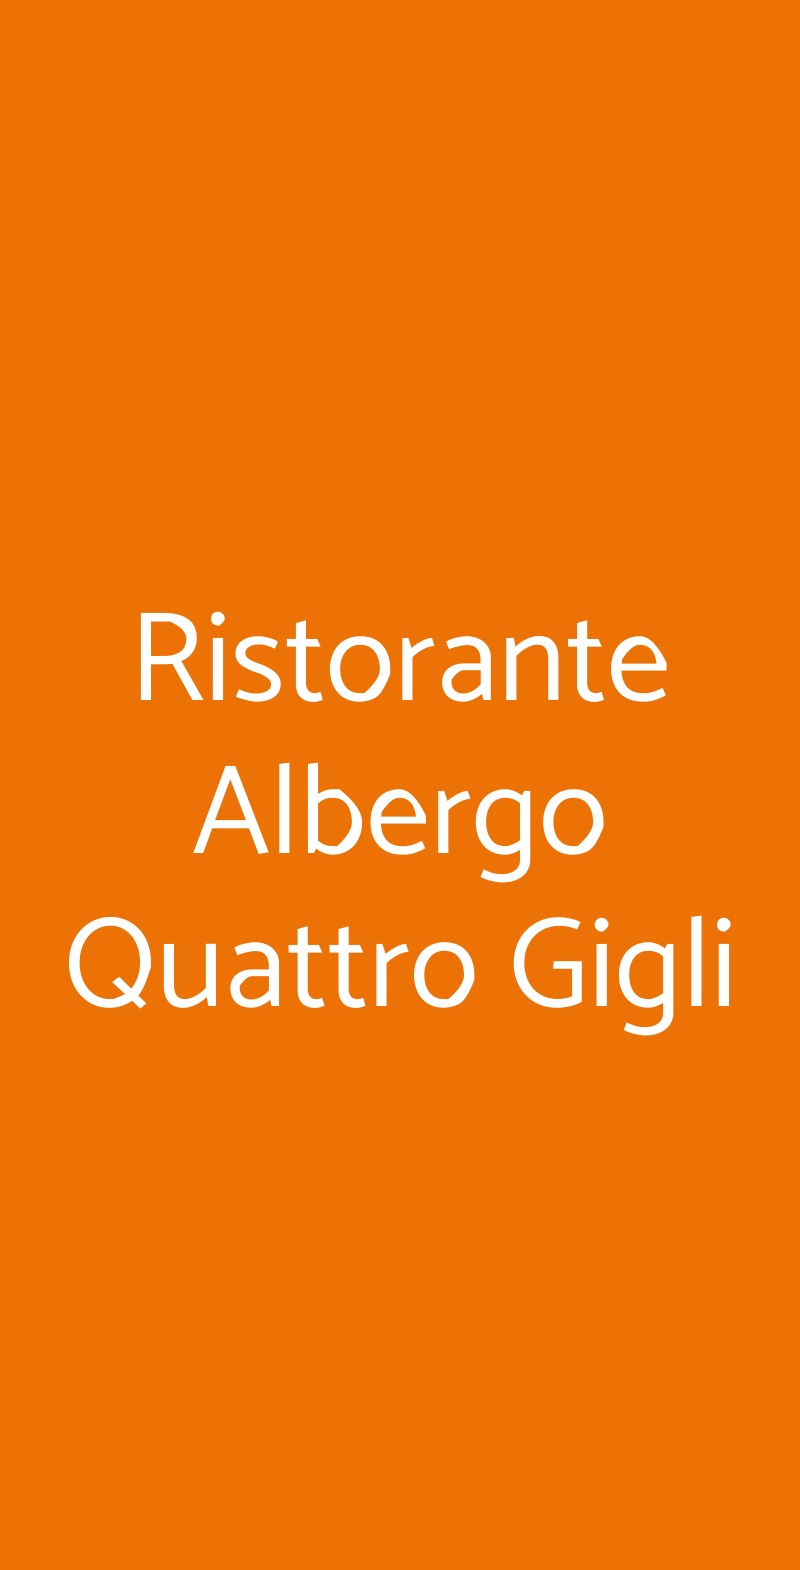 Ristorante Albergo Quattro Gigli Montopoli in Val d'Arno menù 1 pagina